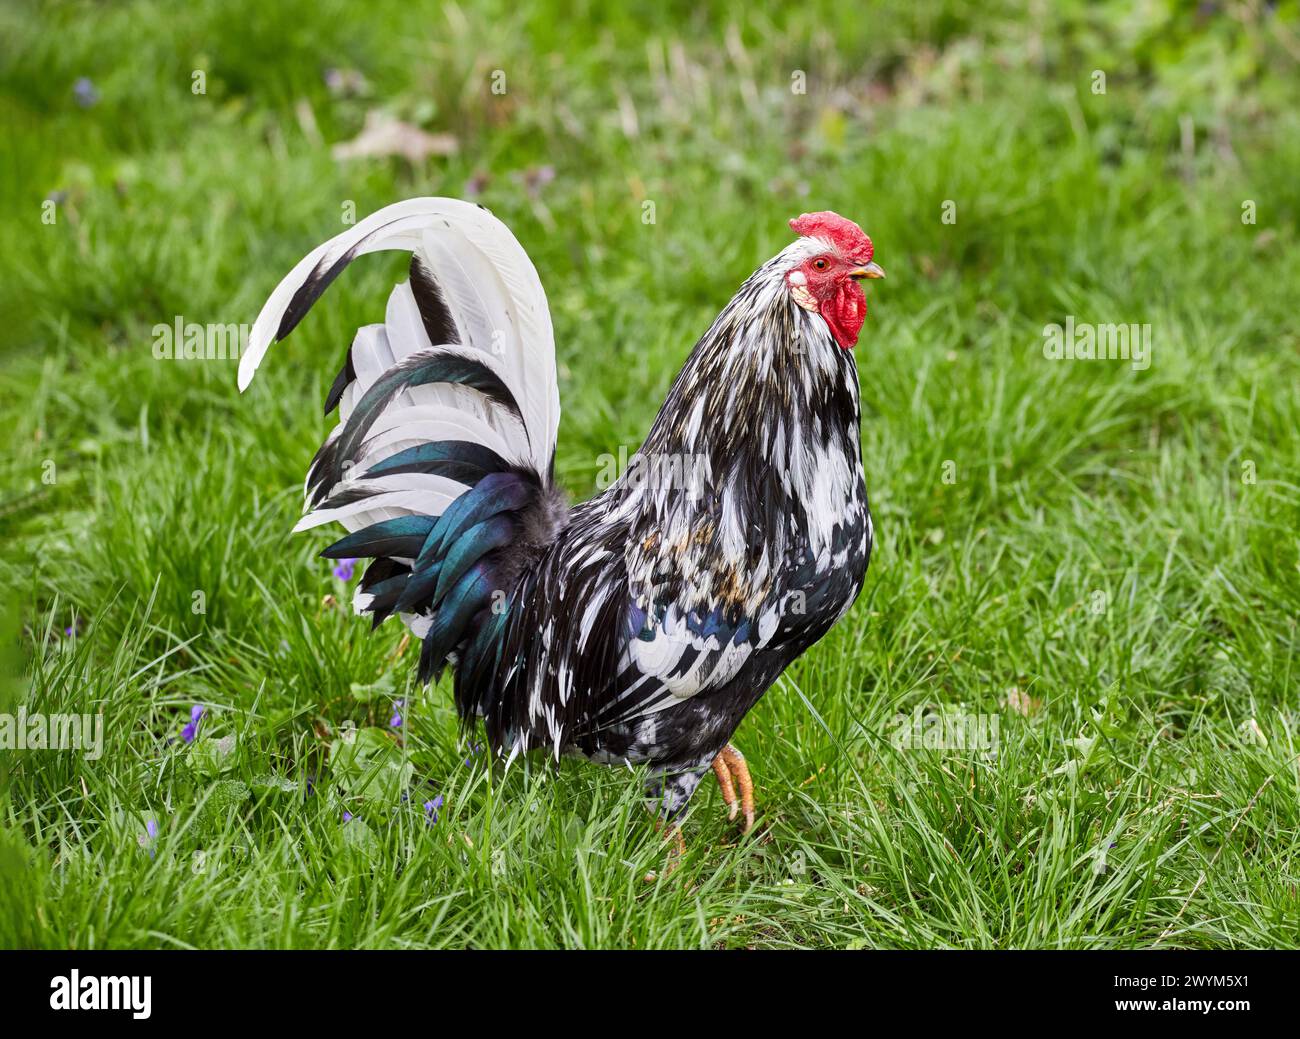 Image de coq hétérogène oiseau à plumes domestique sur herbe verte Banque D'Images